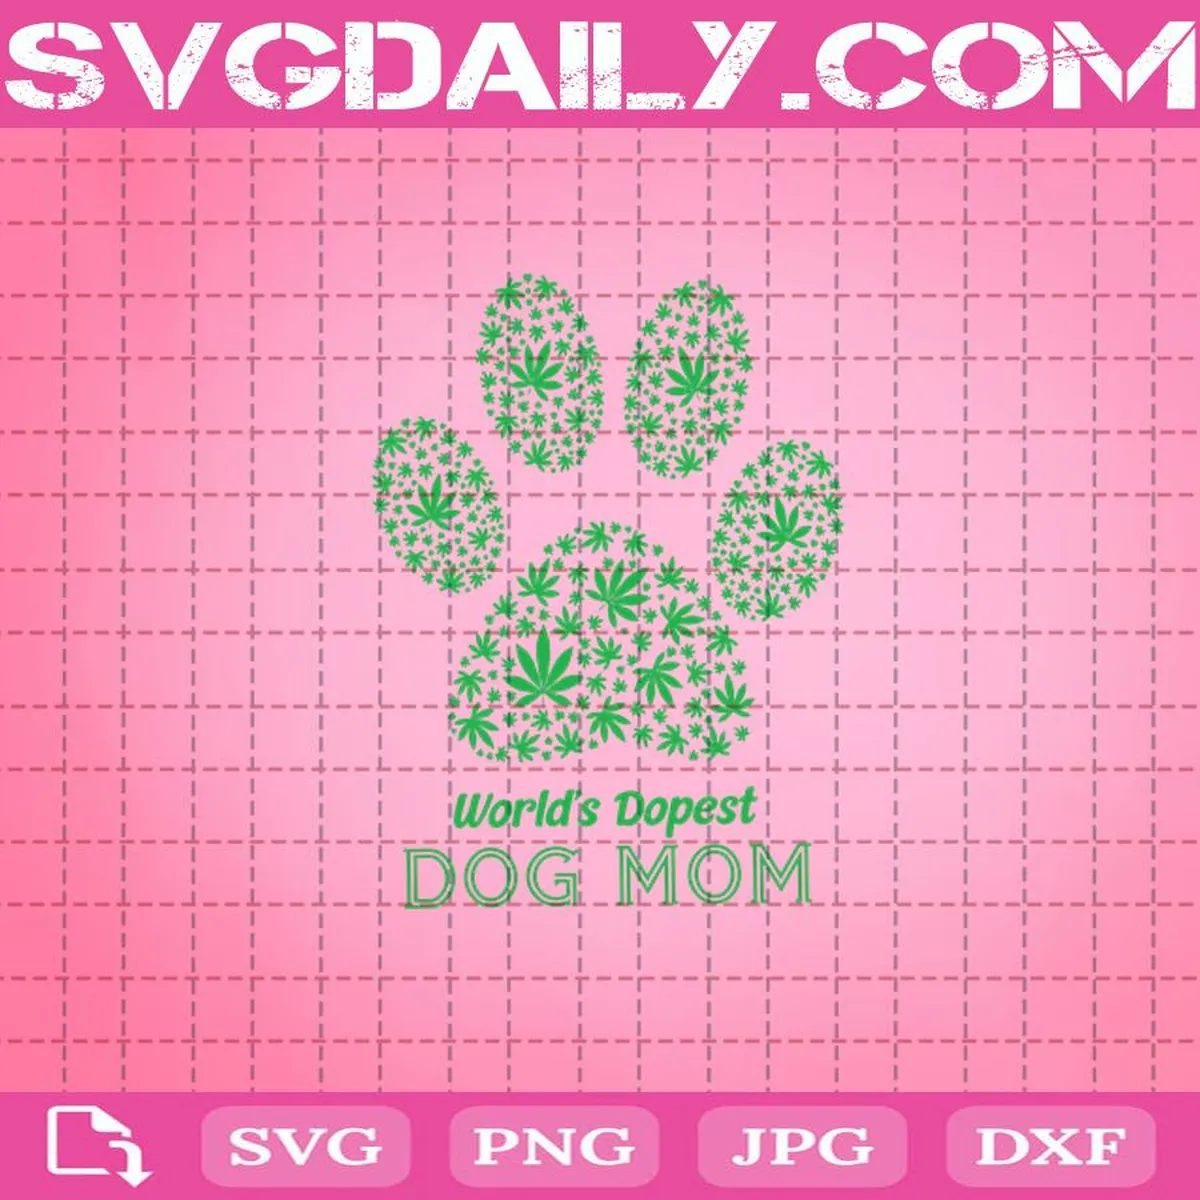 World’s Dopest Dog Mom Svg, Dog Mom Svg, Mother’s Day Svg, Mom Life Svg, Weed Mom Svg, Cannabis Svg, Marijuana Leaf Svg